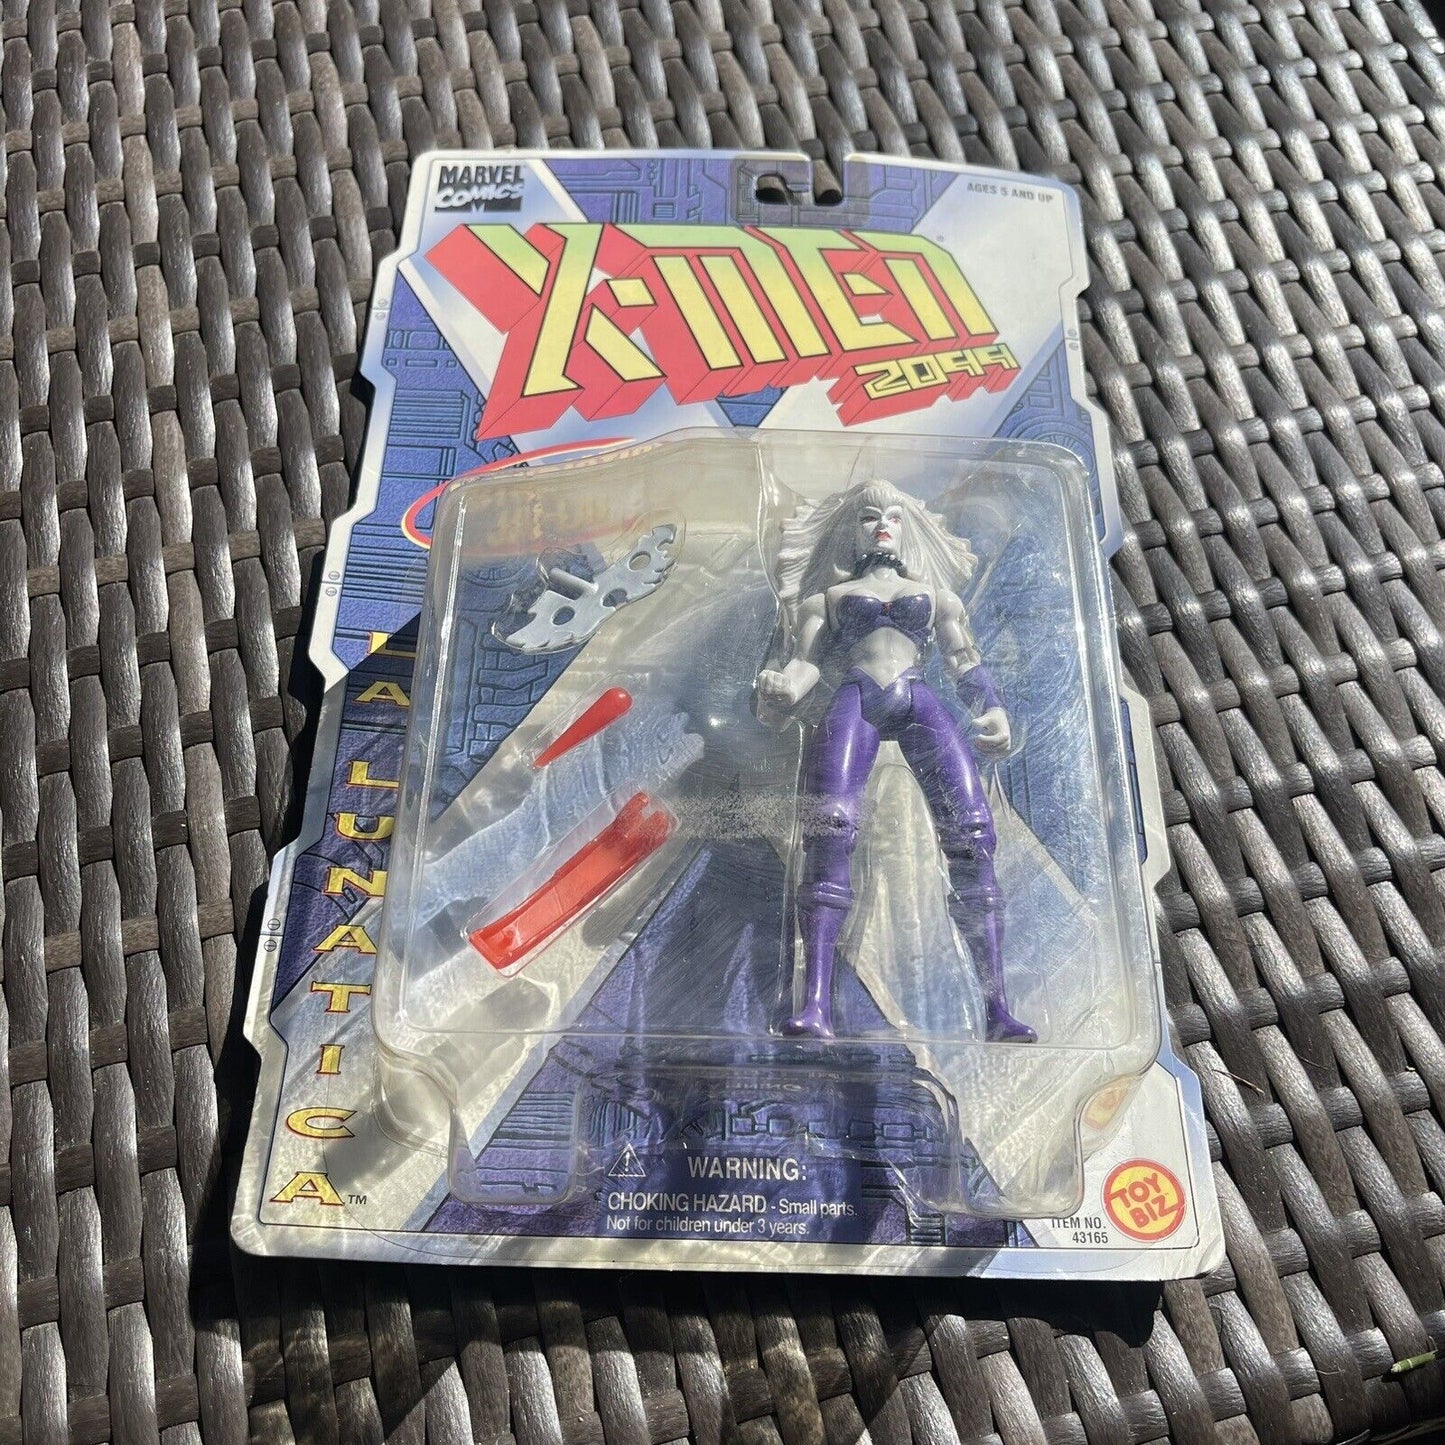 LA LUNATICA FIGURE X-Men XMen 2099 ToyBiz 1996 Retro Free Shipping